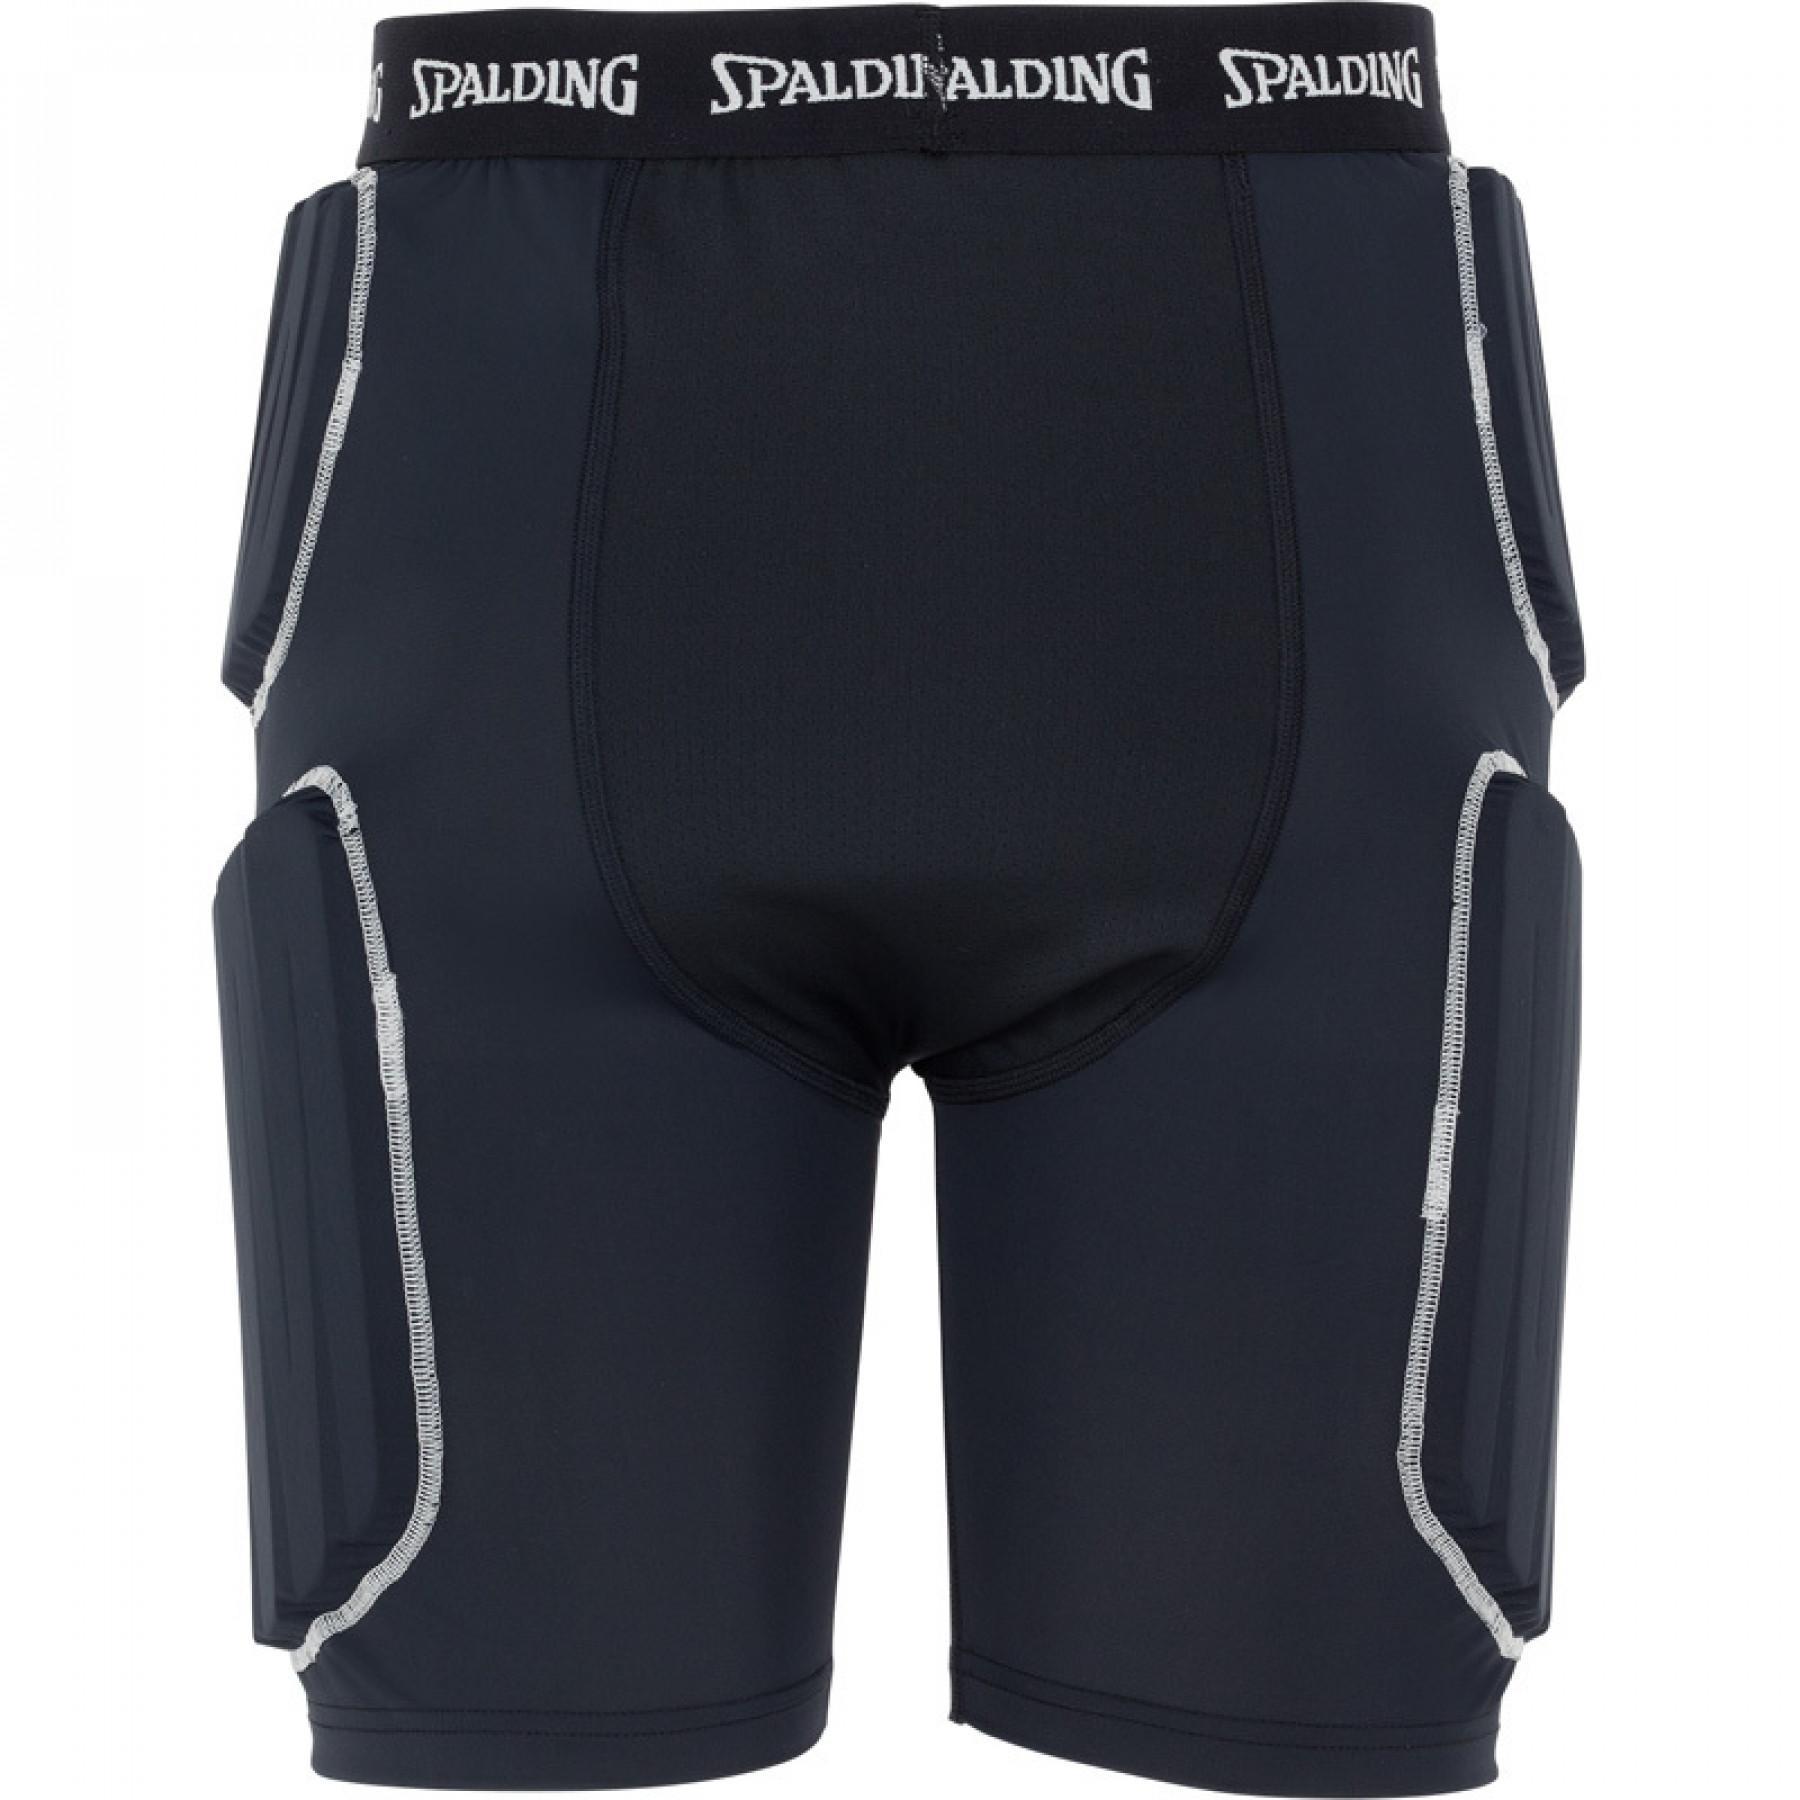 Pantalones cortos de protección Spalding